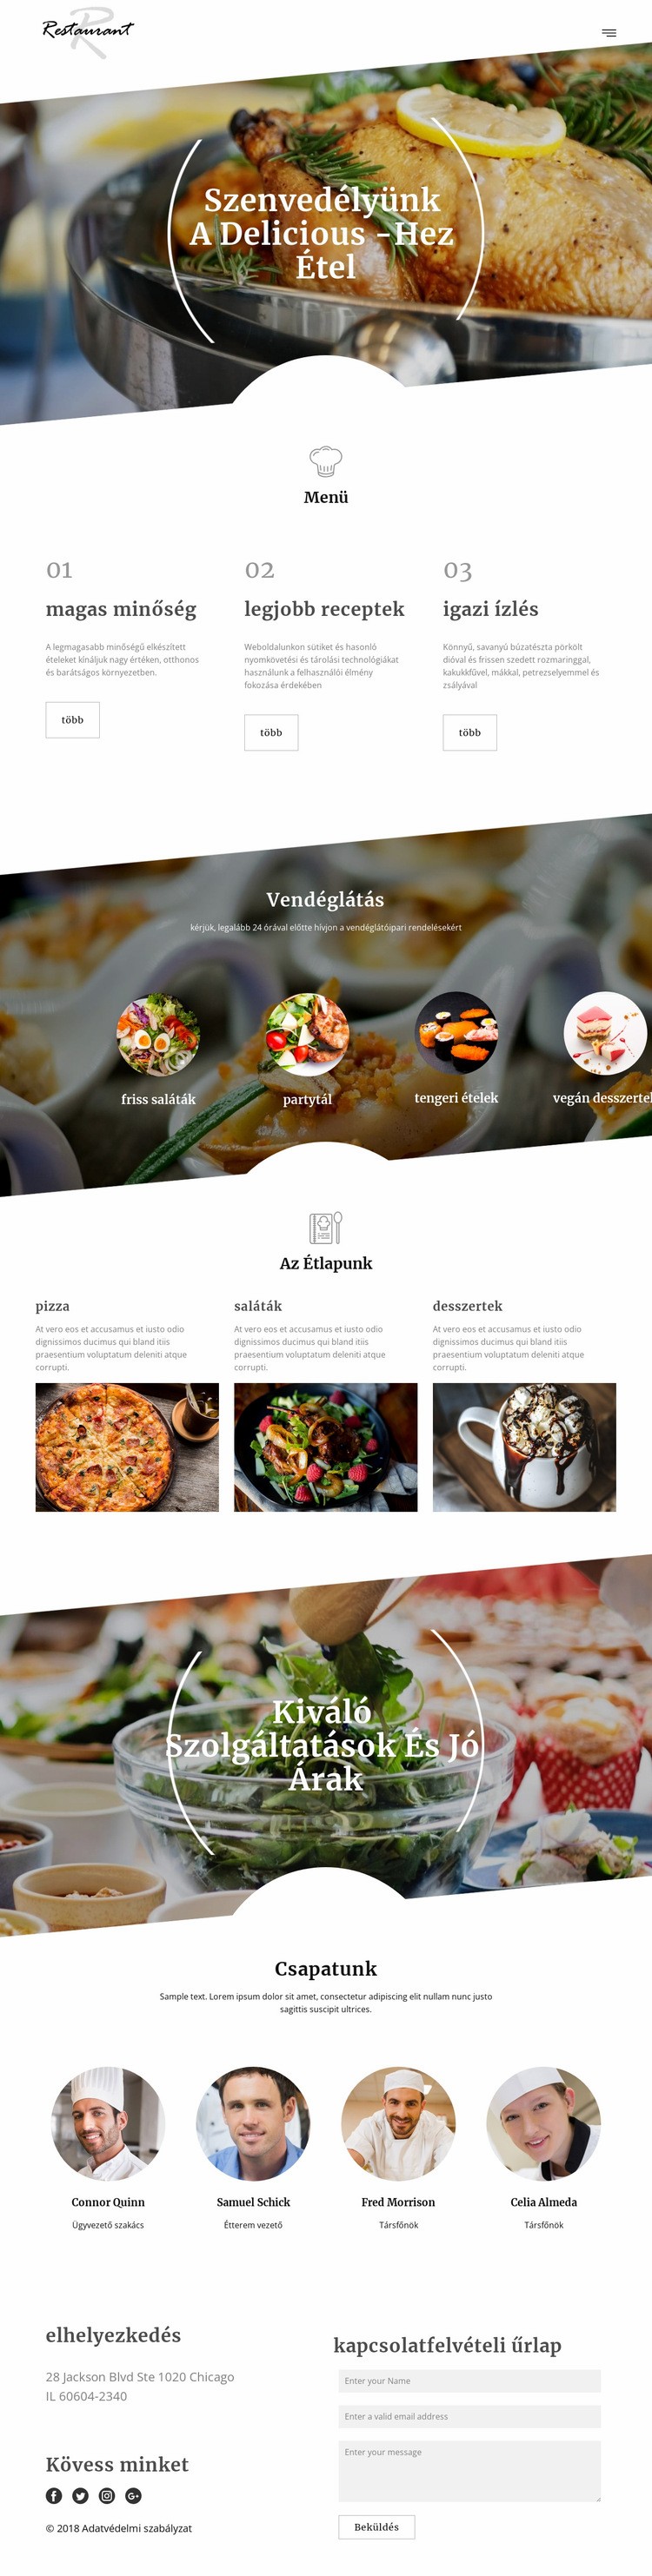 Executive szakács receptek Weboldal sablon